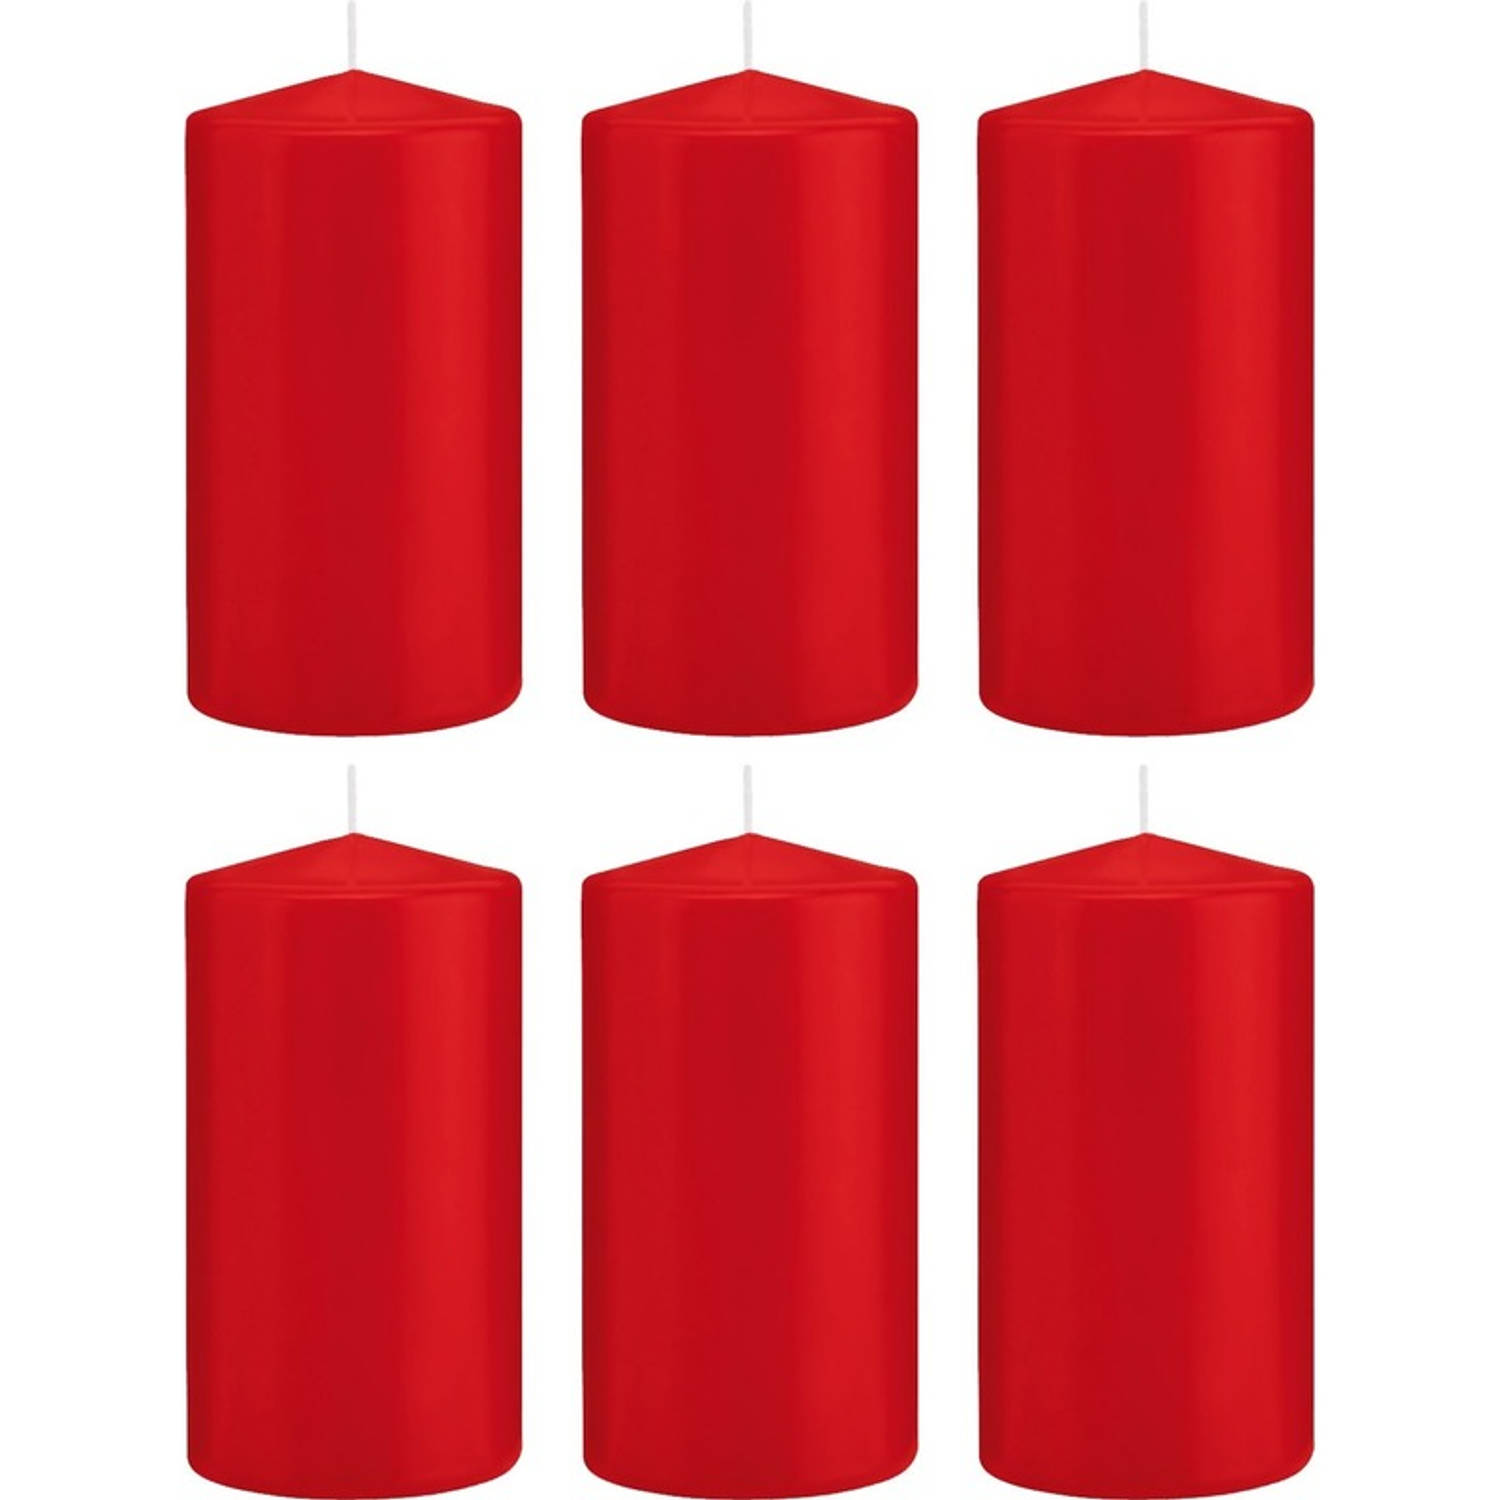 Trend Candles 6x Rode Cilinderkaarsen/stompkaarsen 8 X 15 Cm 69 Branduren - Geurloze Kaarsen - Woondecoraties - Rood